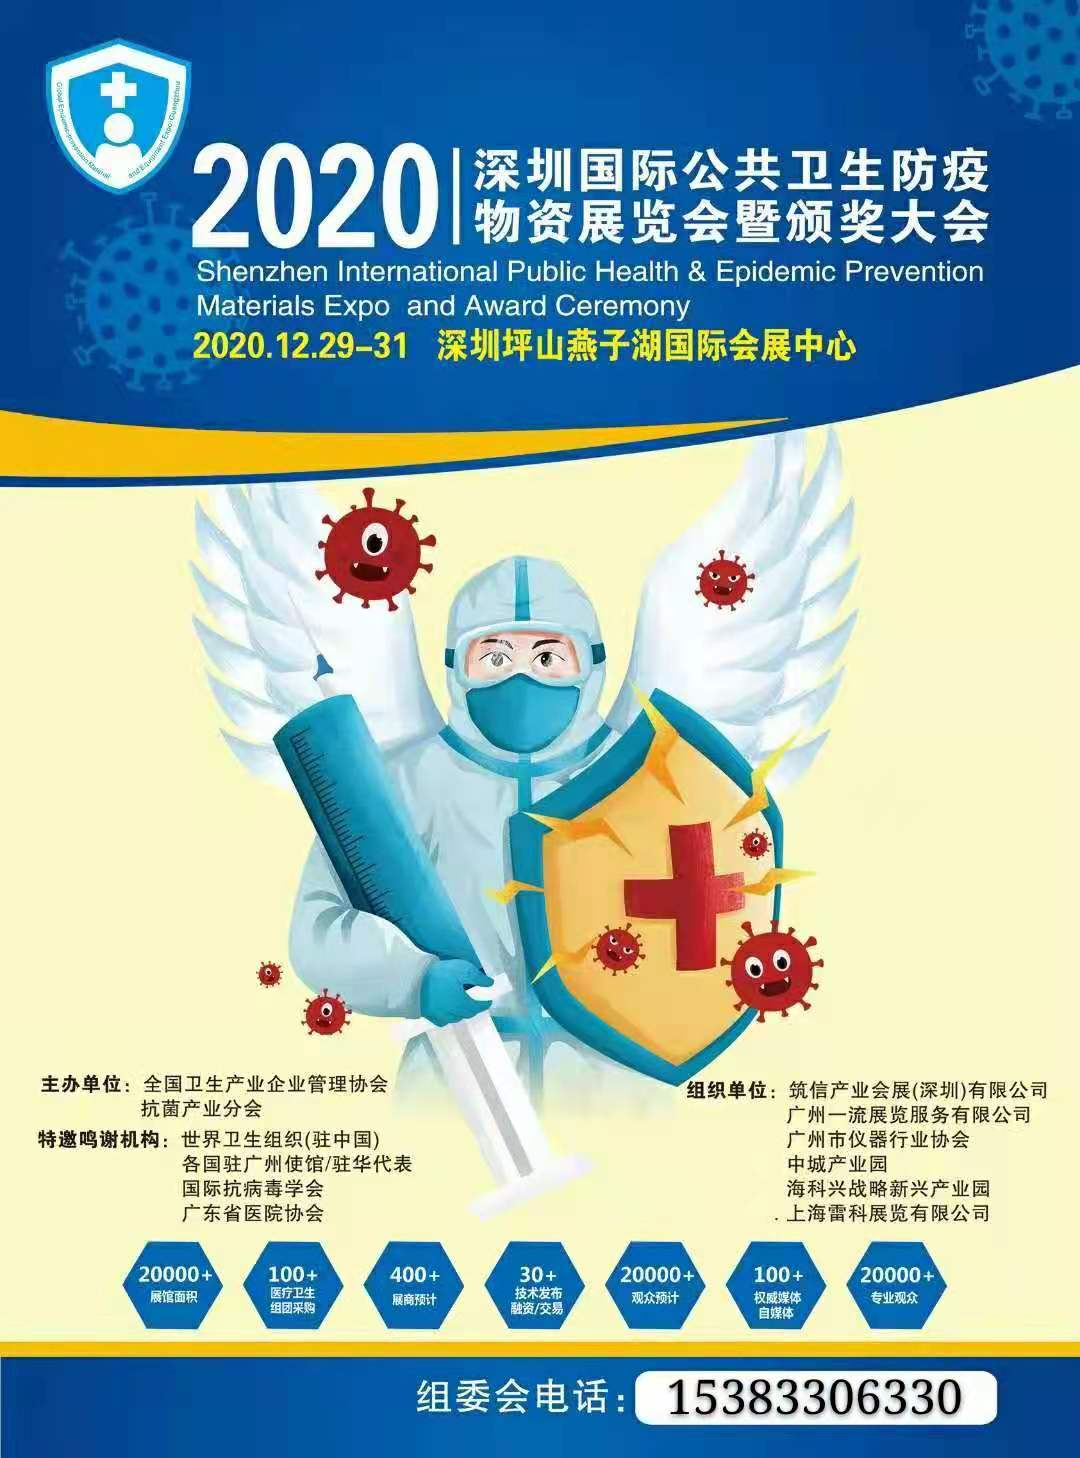 2020中国（深圳)国际公共卫生防疫物资展览会暨颁奖大会